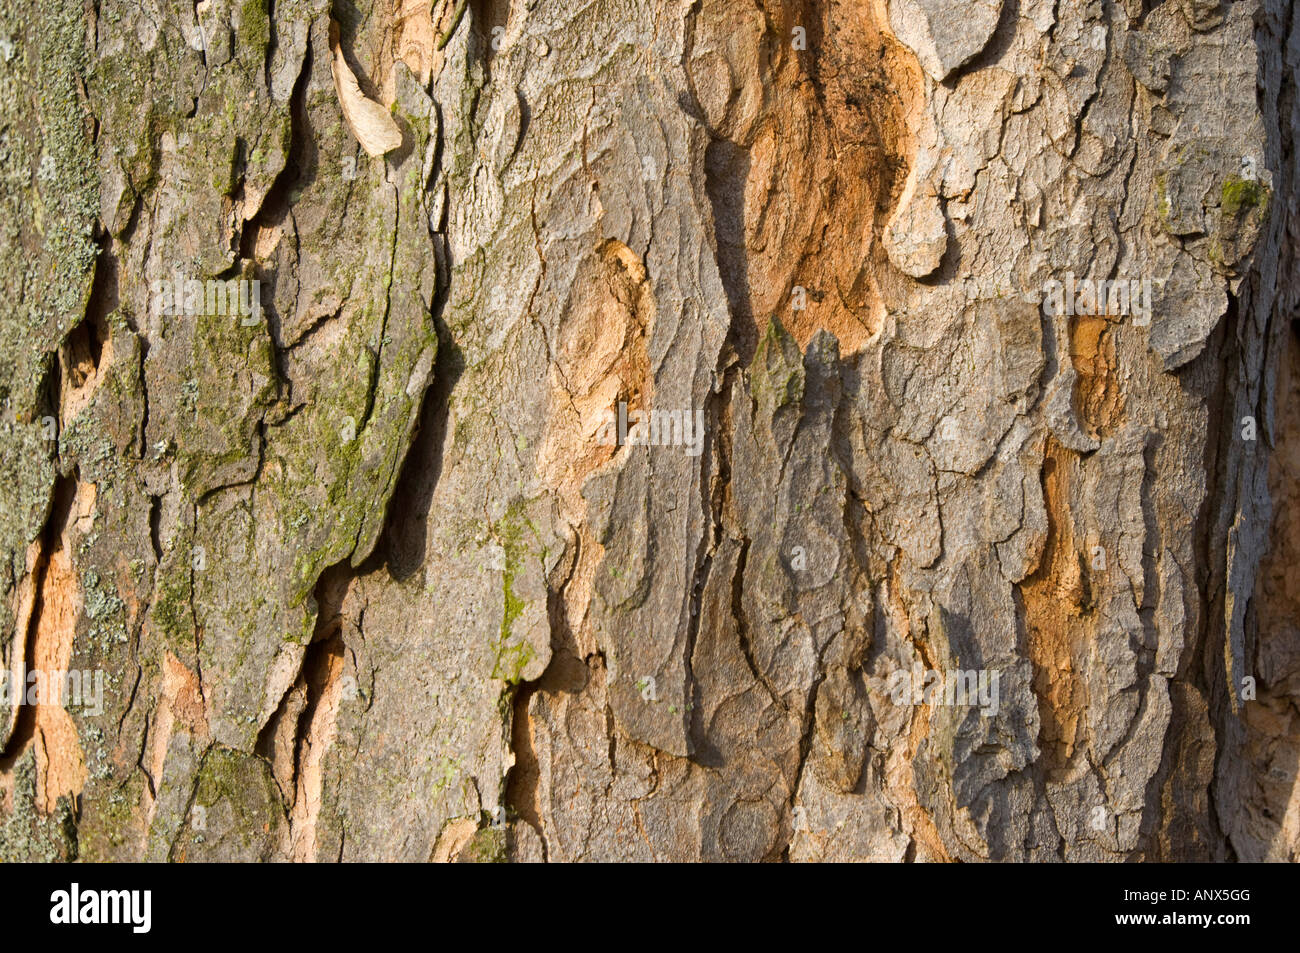 L'écorce écorce Rinde cortex peeling peau d'arbre en bois bois stilllife encore Banque D'Images